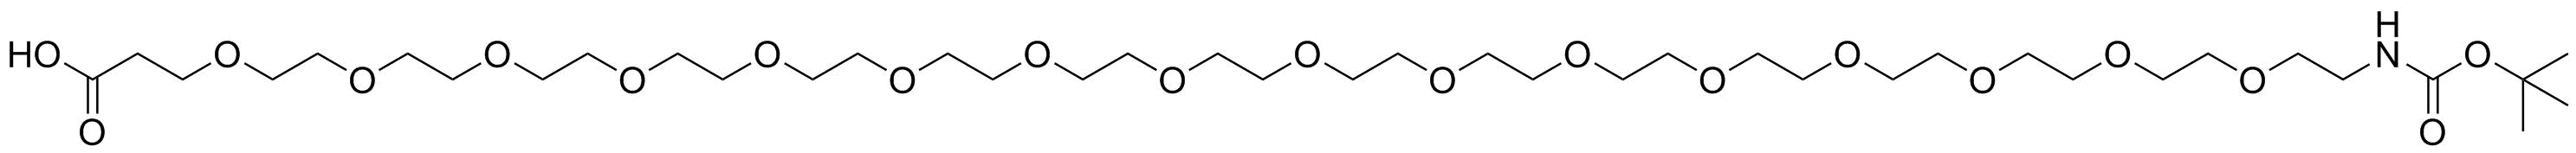 t-Boc-N-amido-PEG16-acid